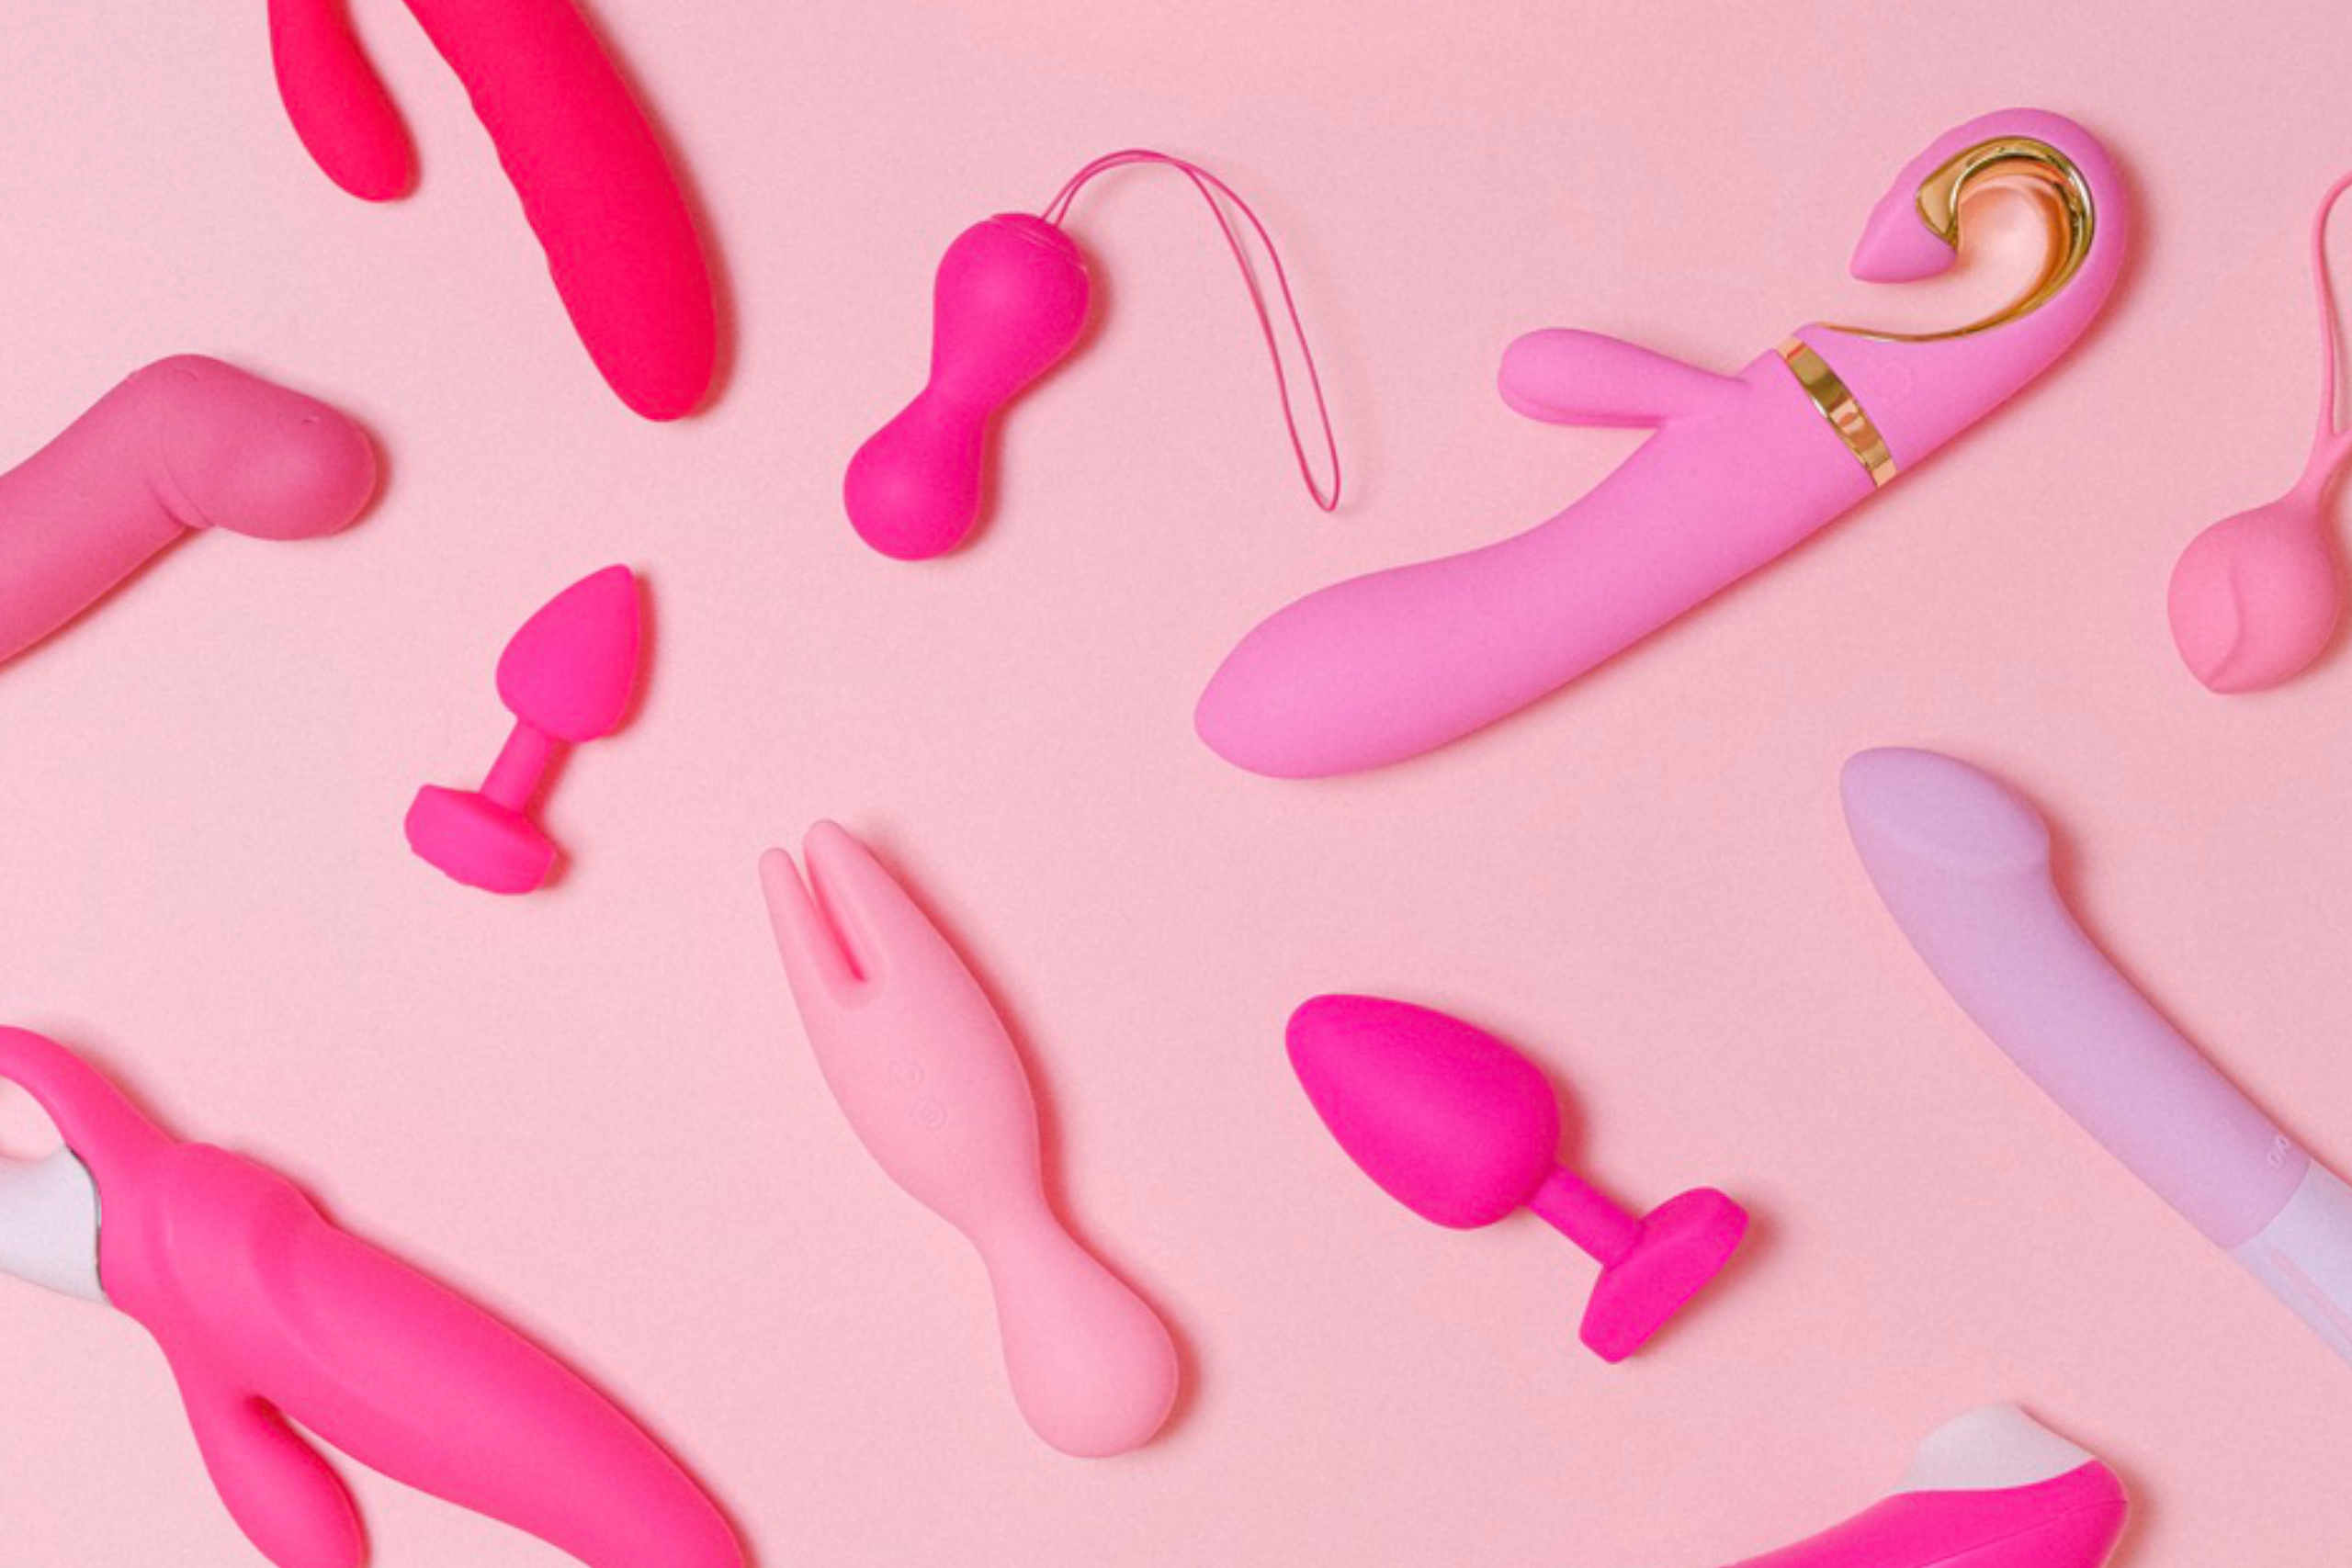 Variados tipos de brinquedos sexuais femininos em diferentes tonalidades de rosa.